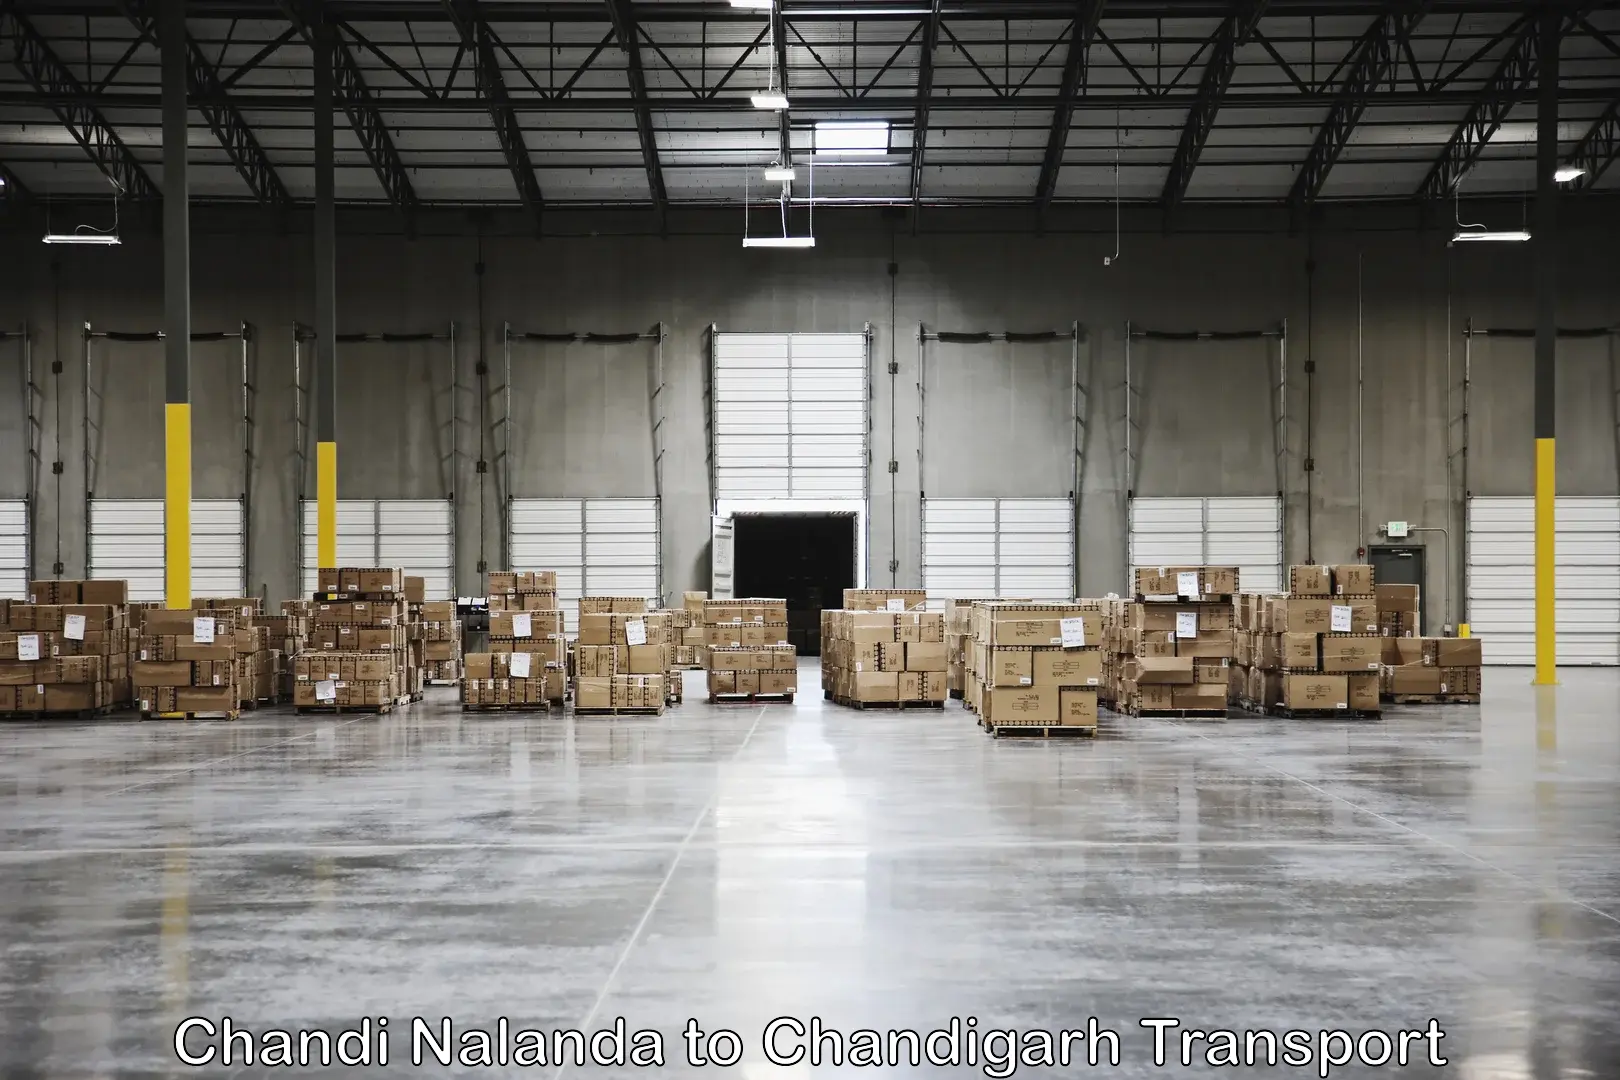 Truck transport companies in India Chandi Nalanda to Chandigarh